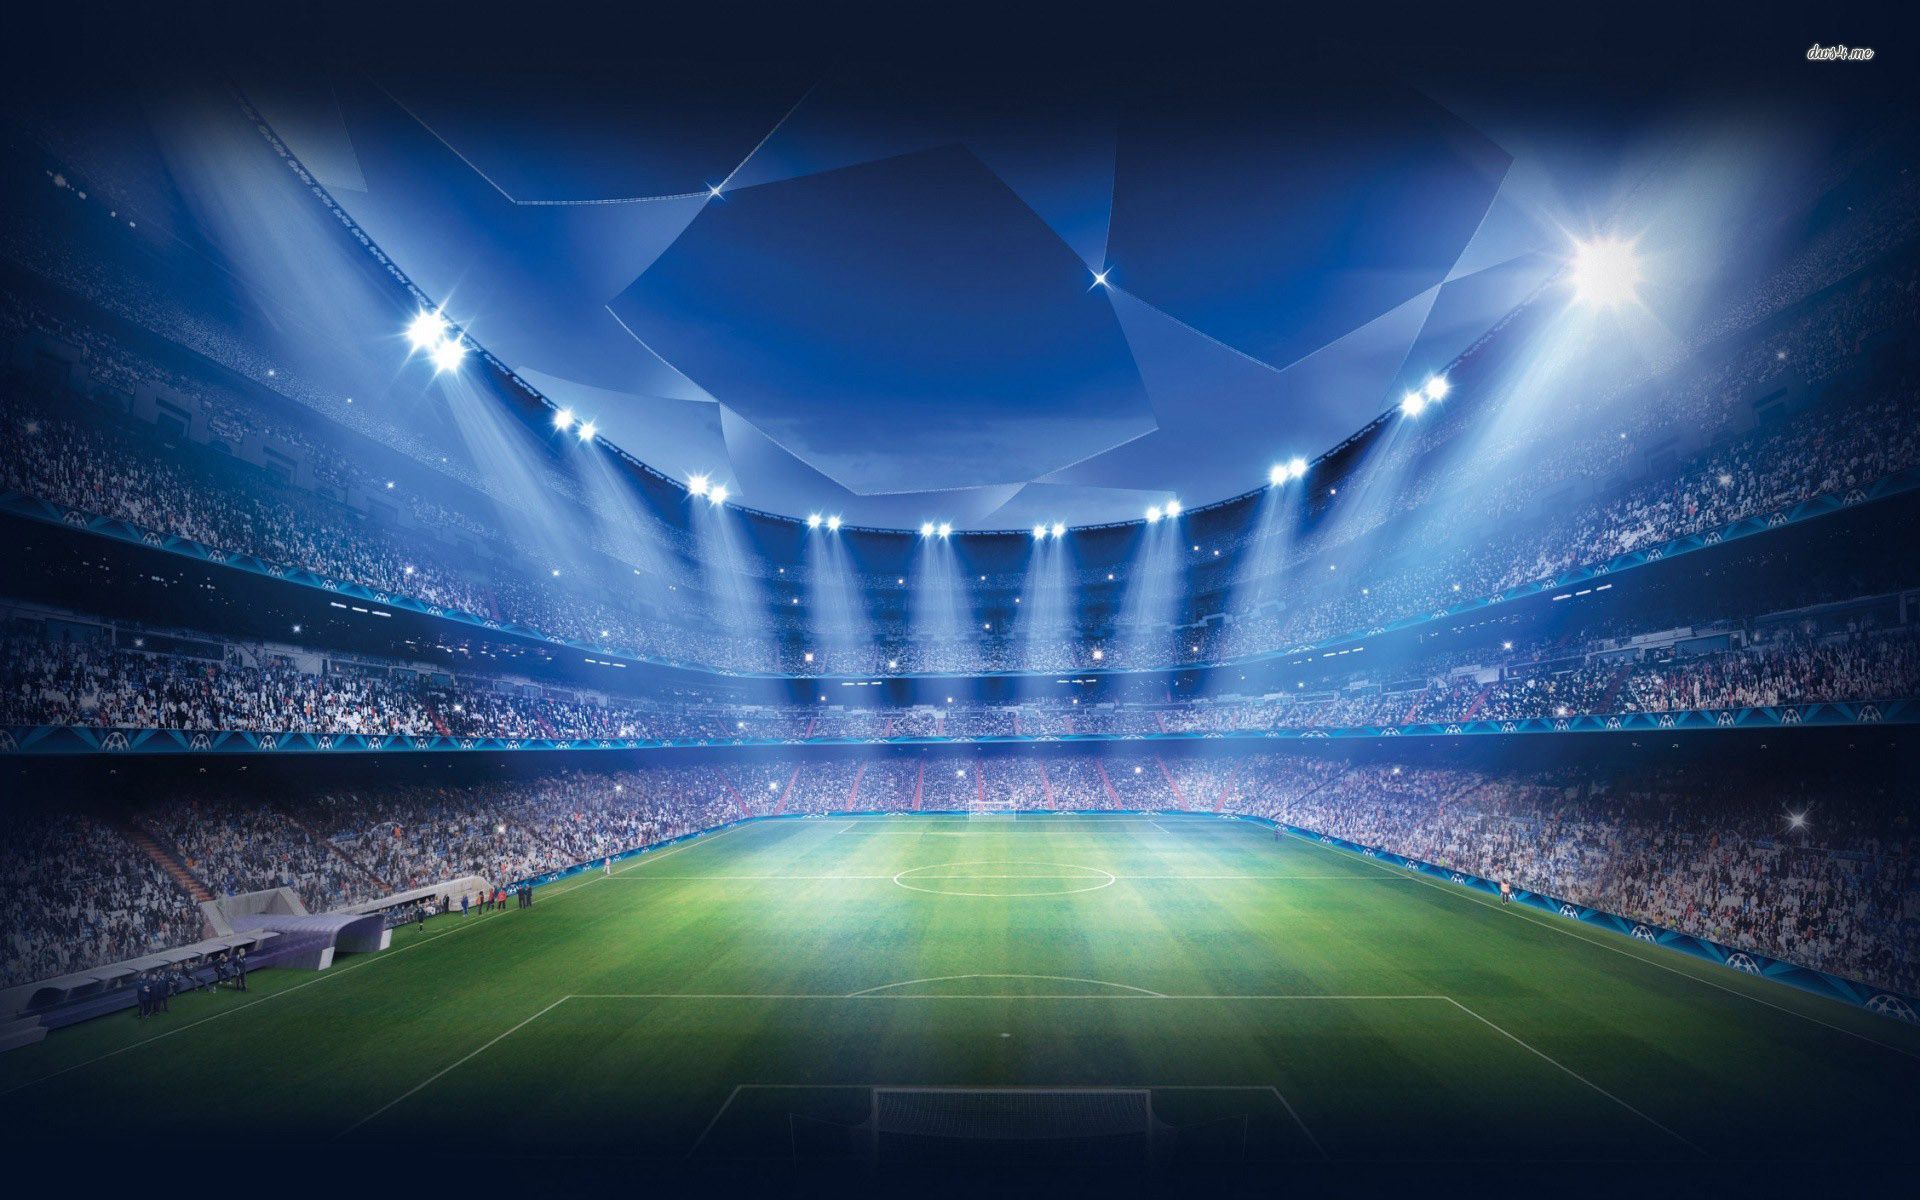 Hình nền sân vận động 4K siêu nét cho stadium background 4k thiết kế website, video, ảnh sản phẩm